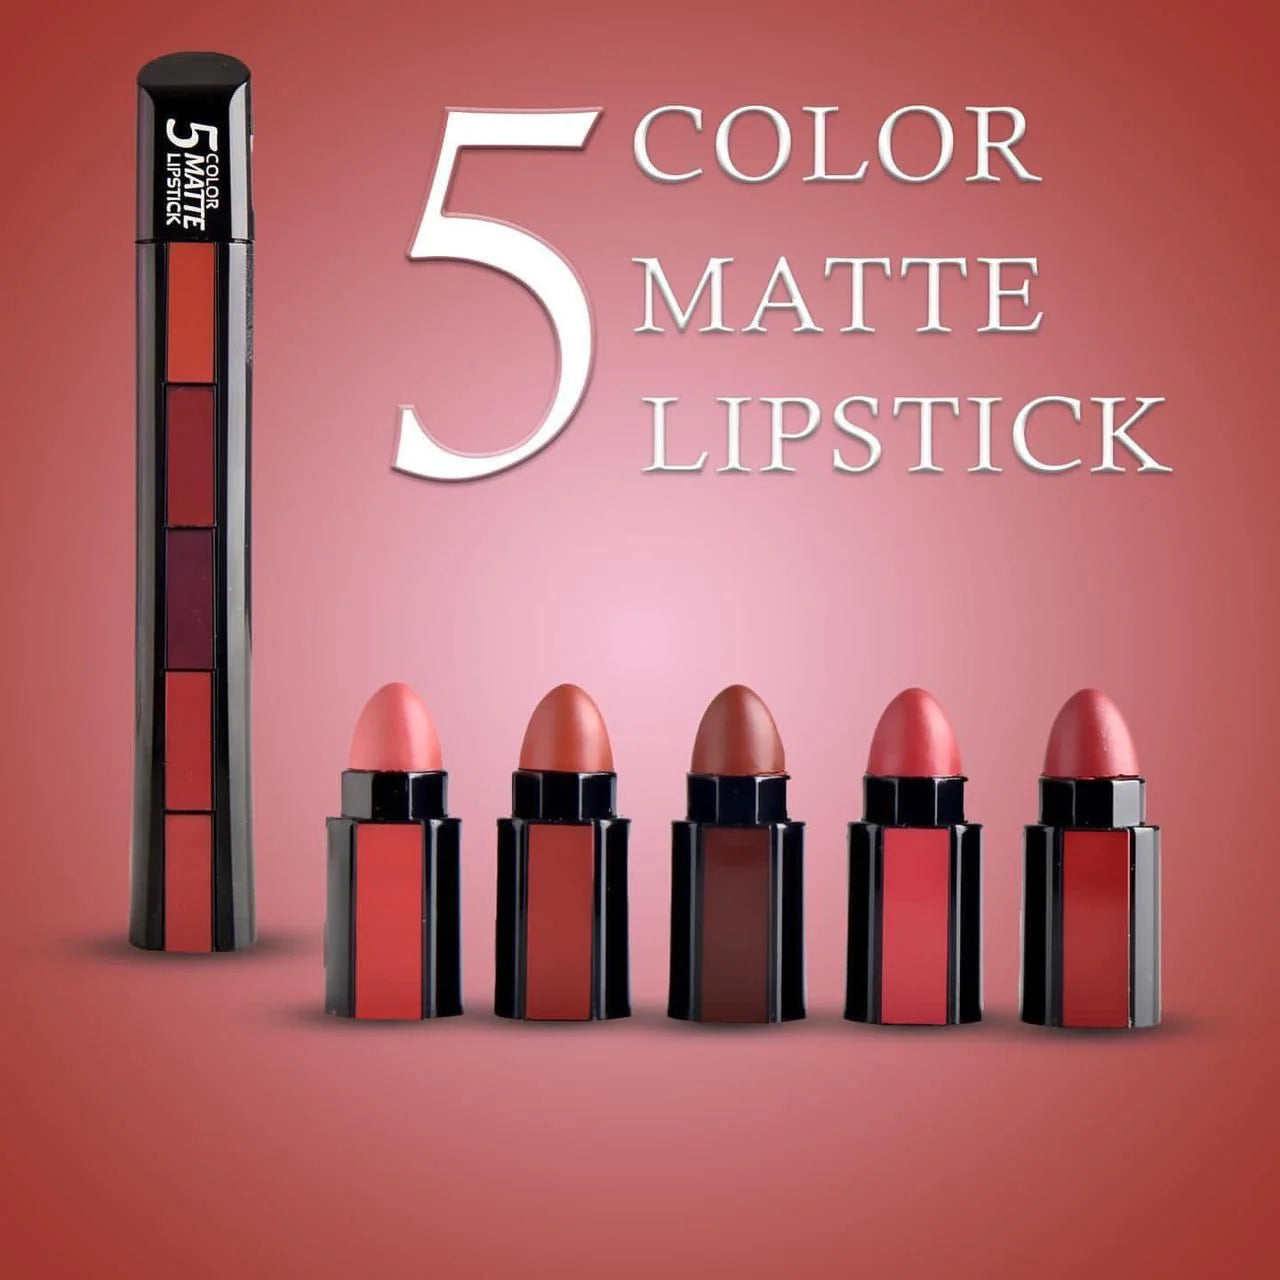 5 in 1 Matte Lipstick –